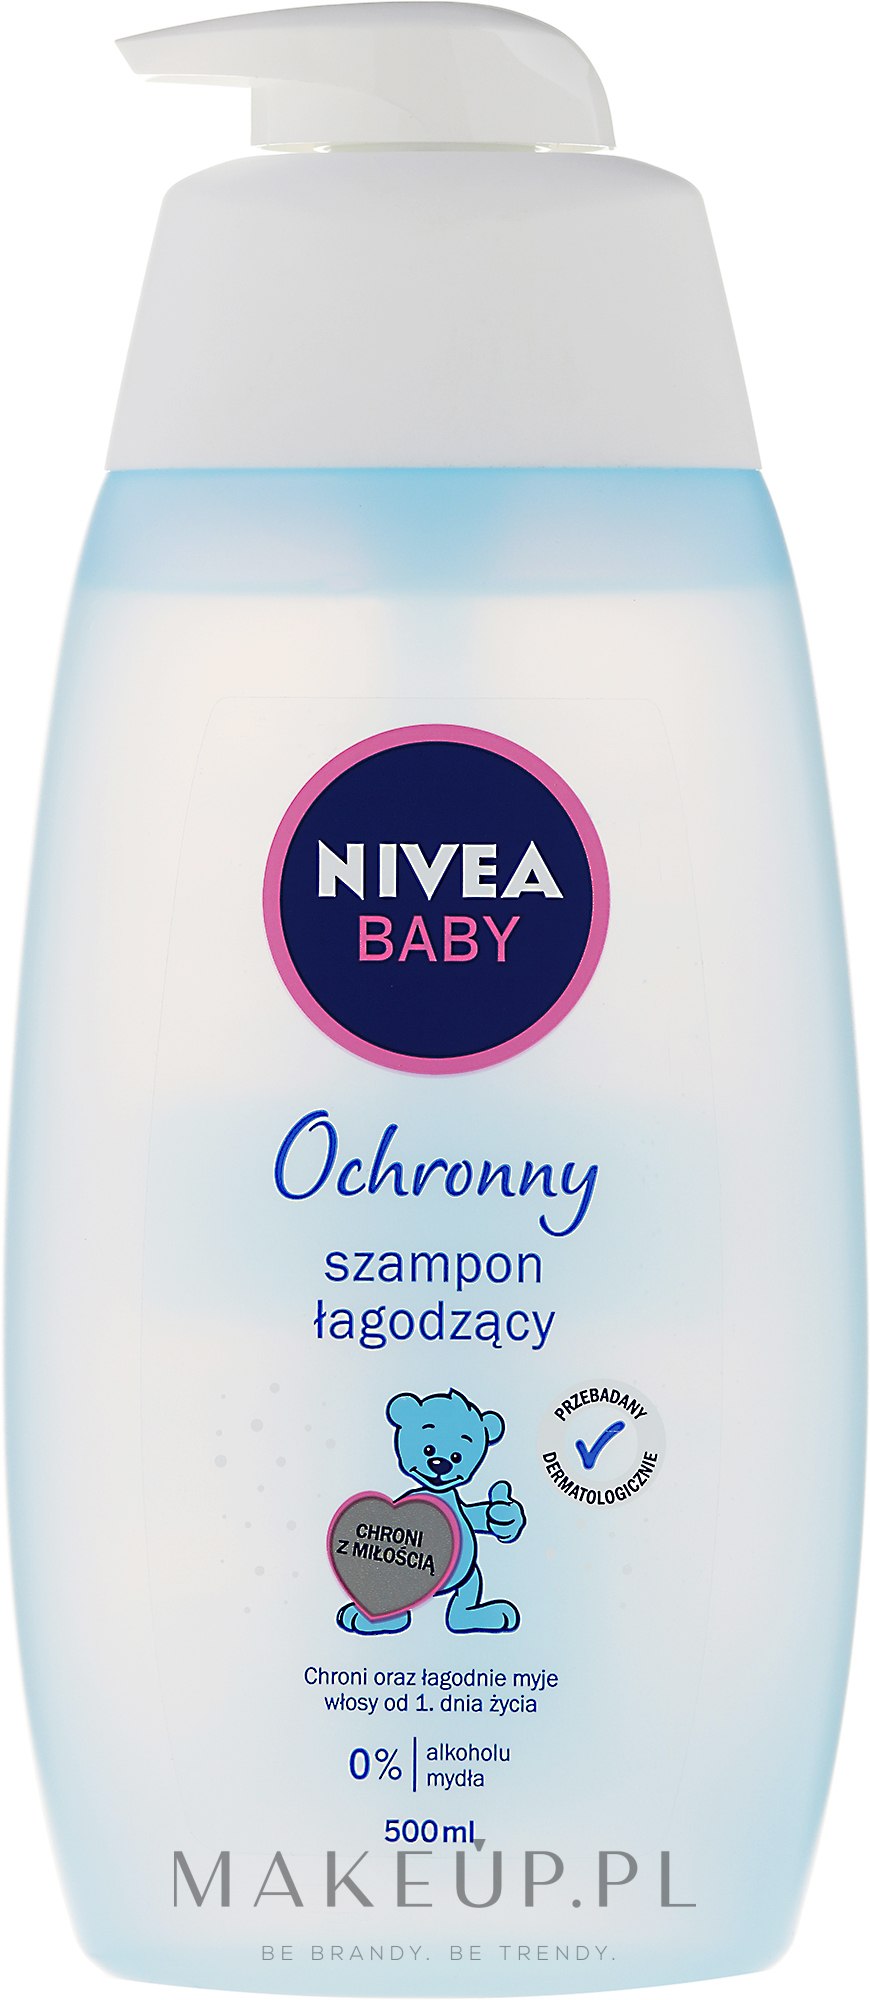 nivea baby szampon łagodzący blog